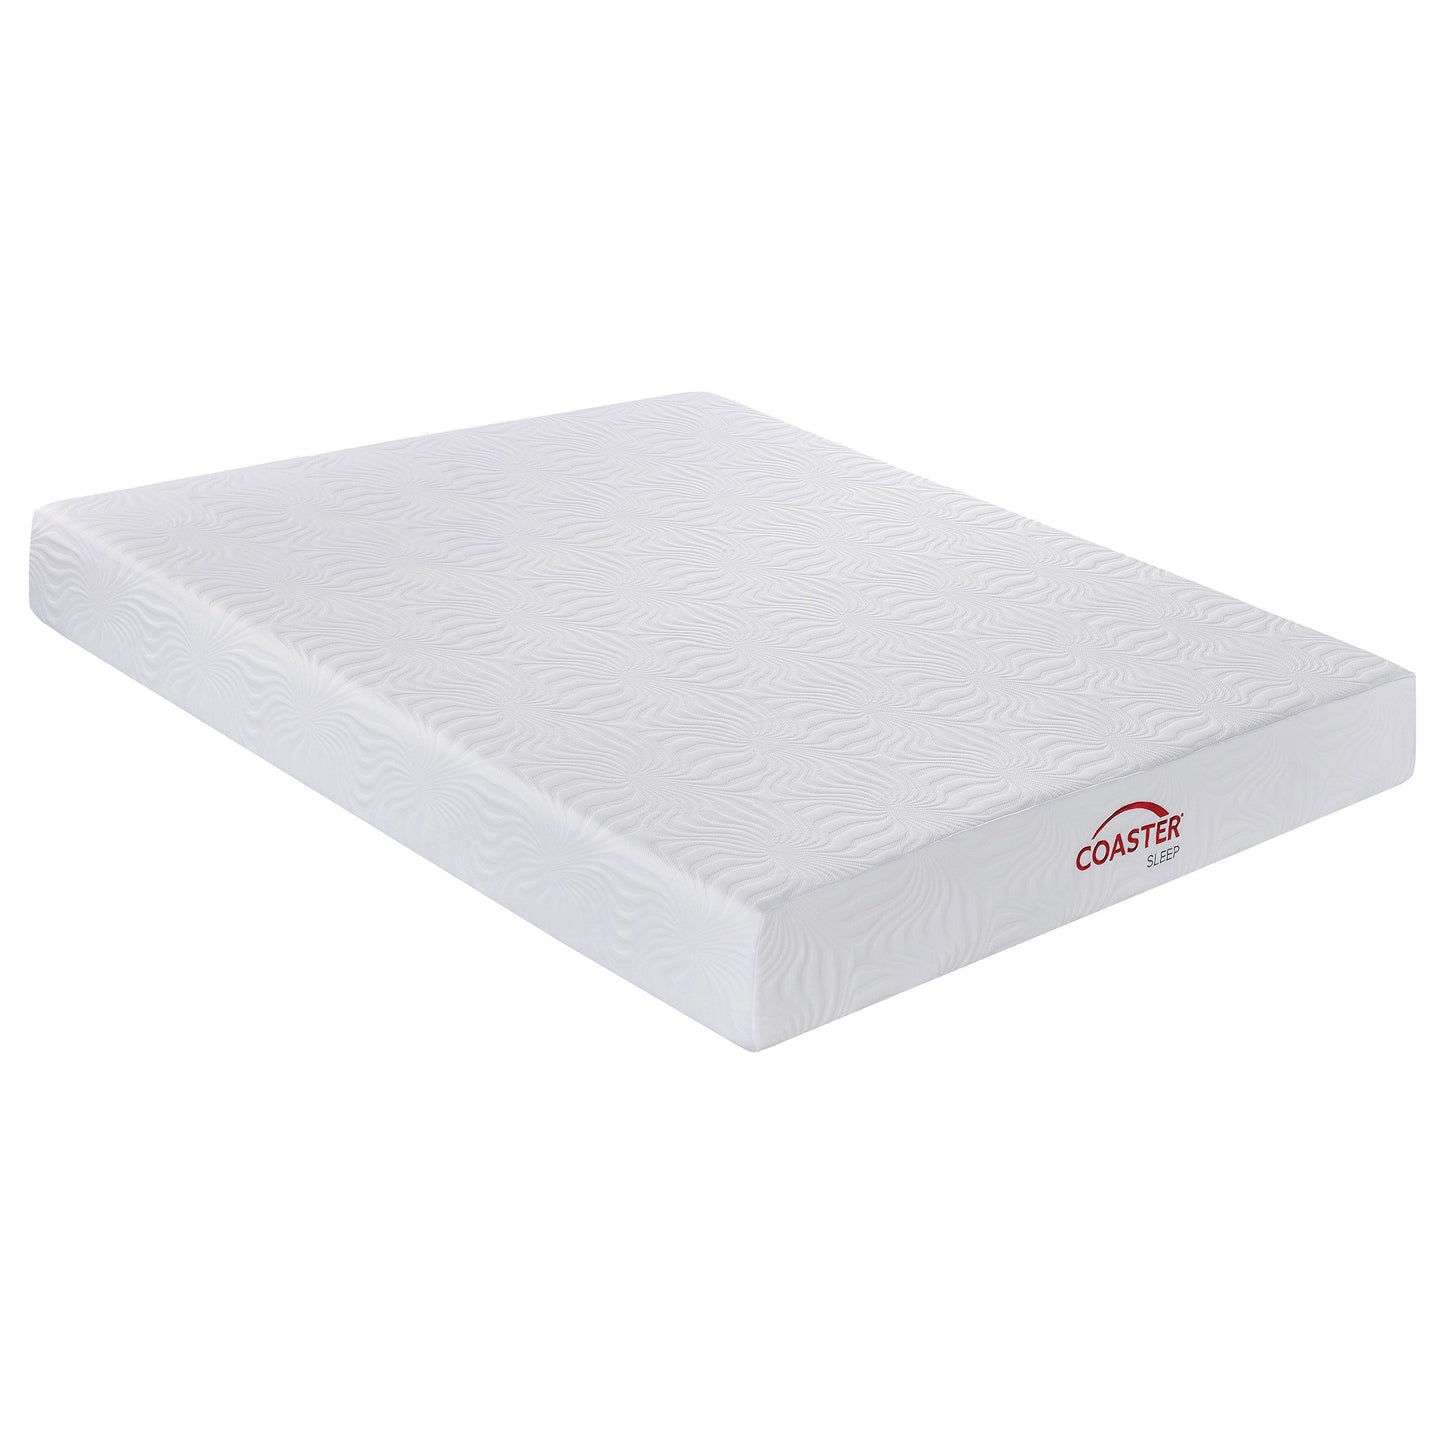 10" eastern king memory foam mattress